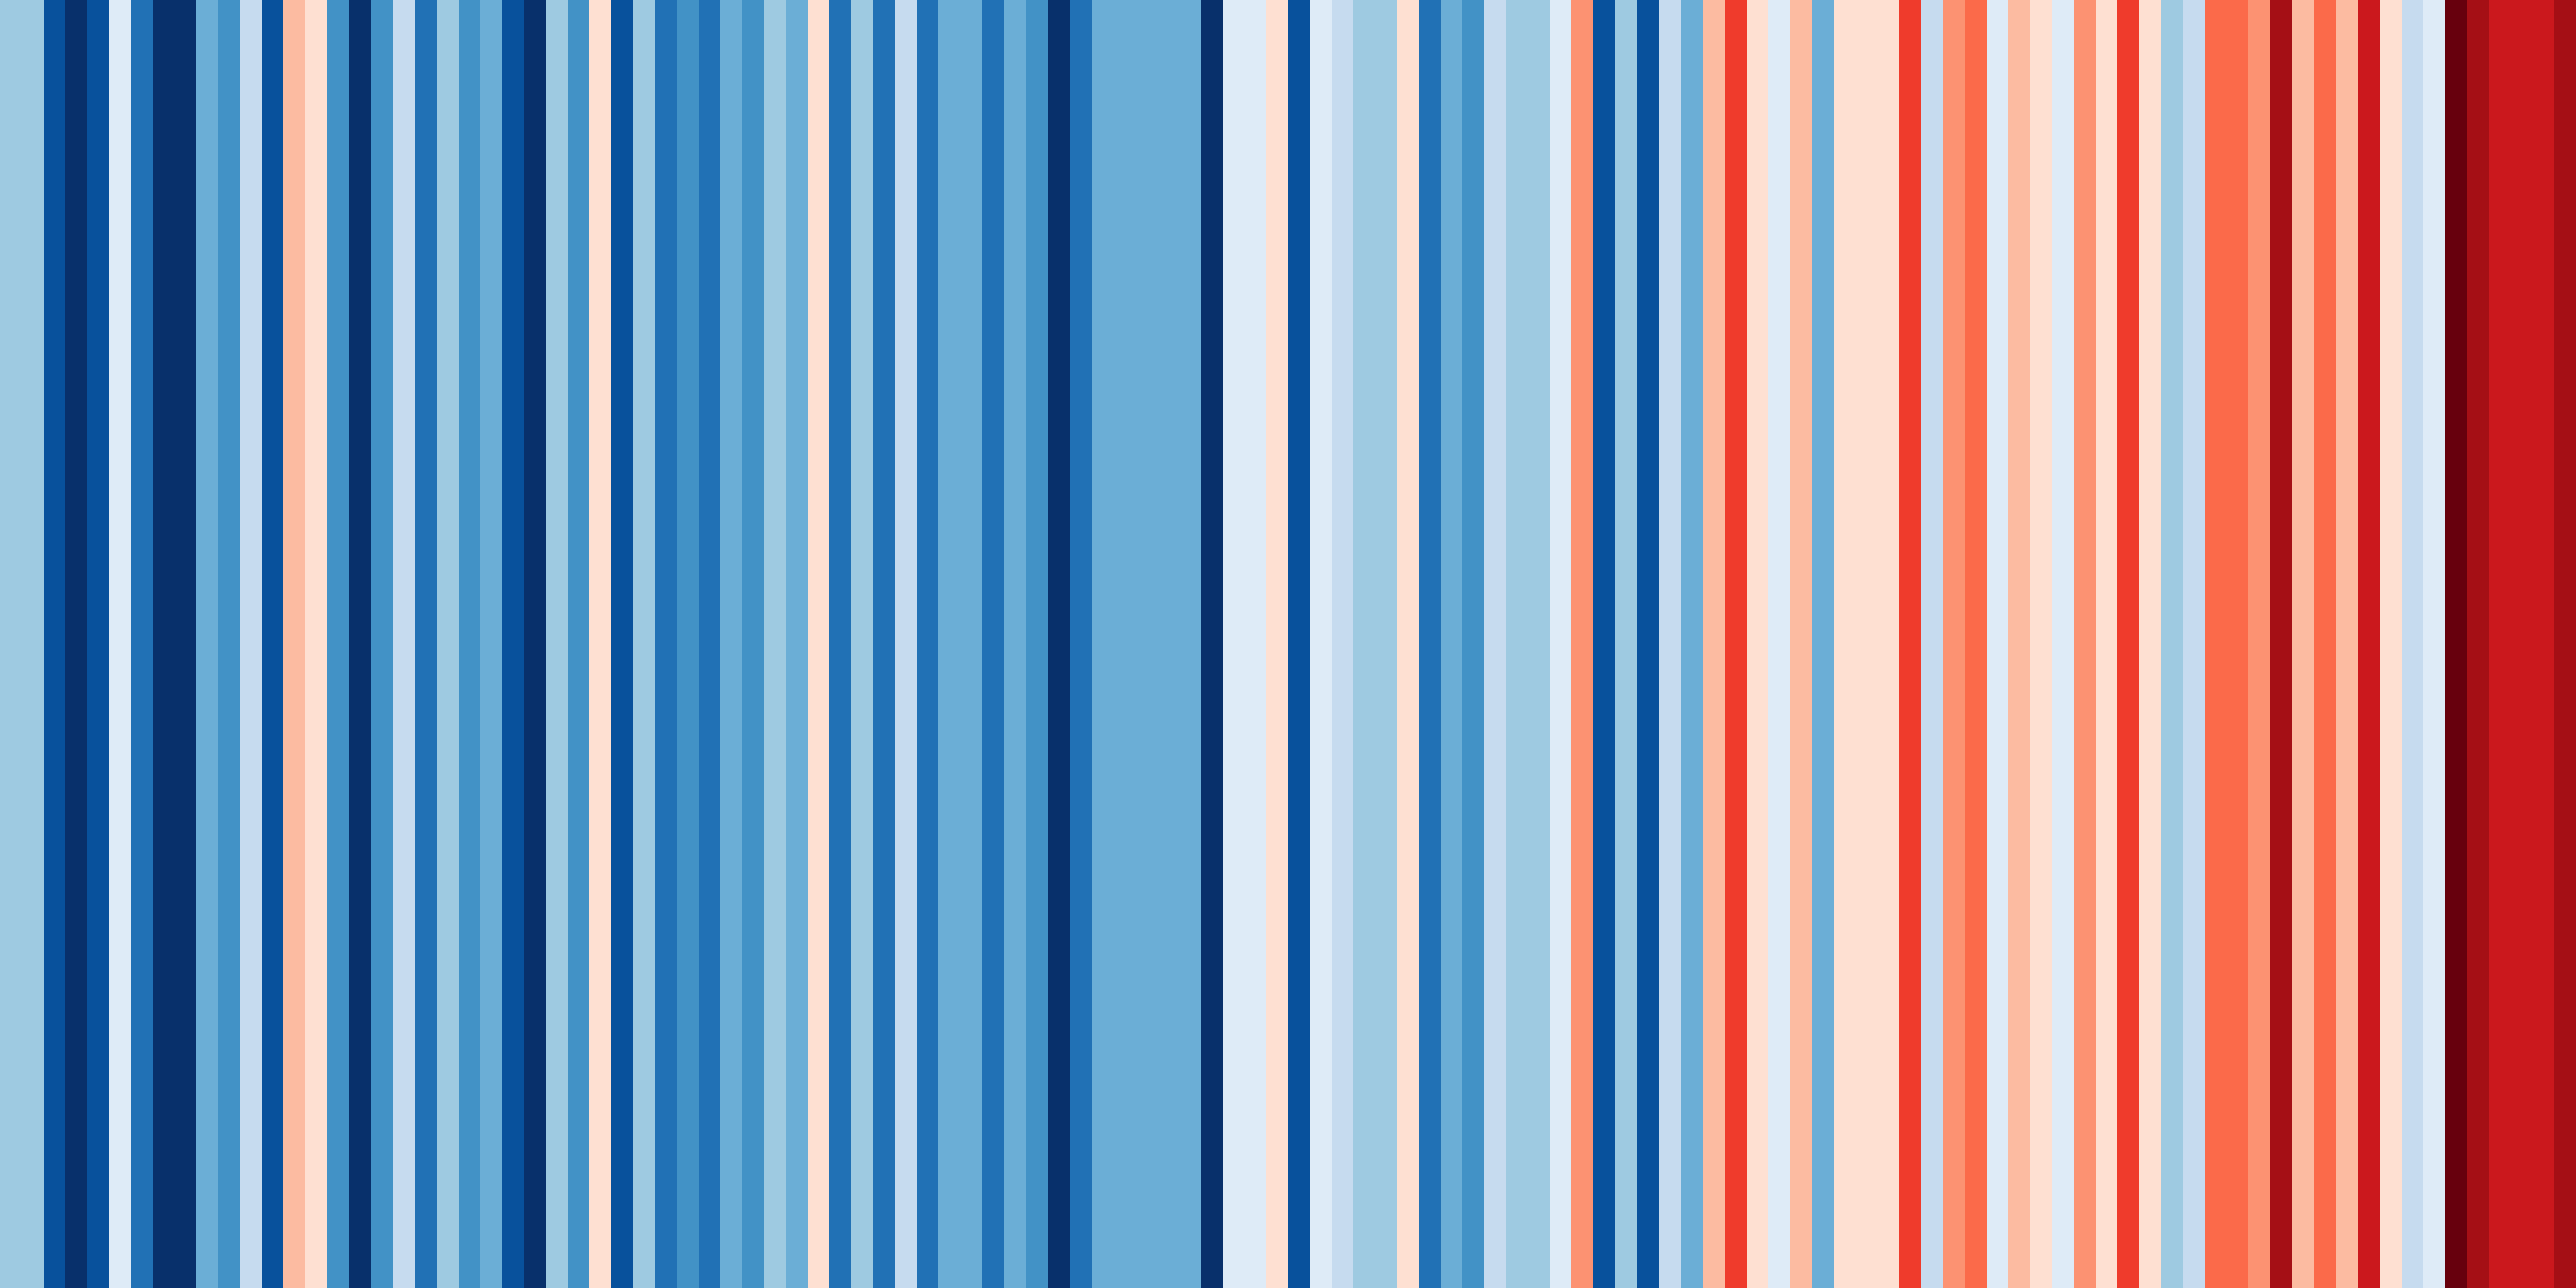 Australia Temperature Record